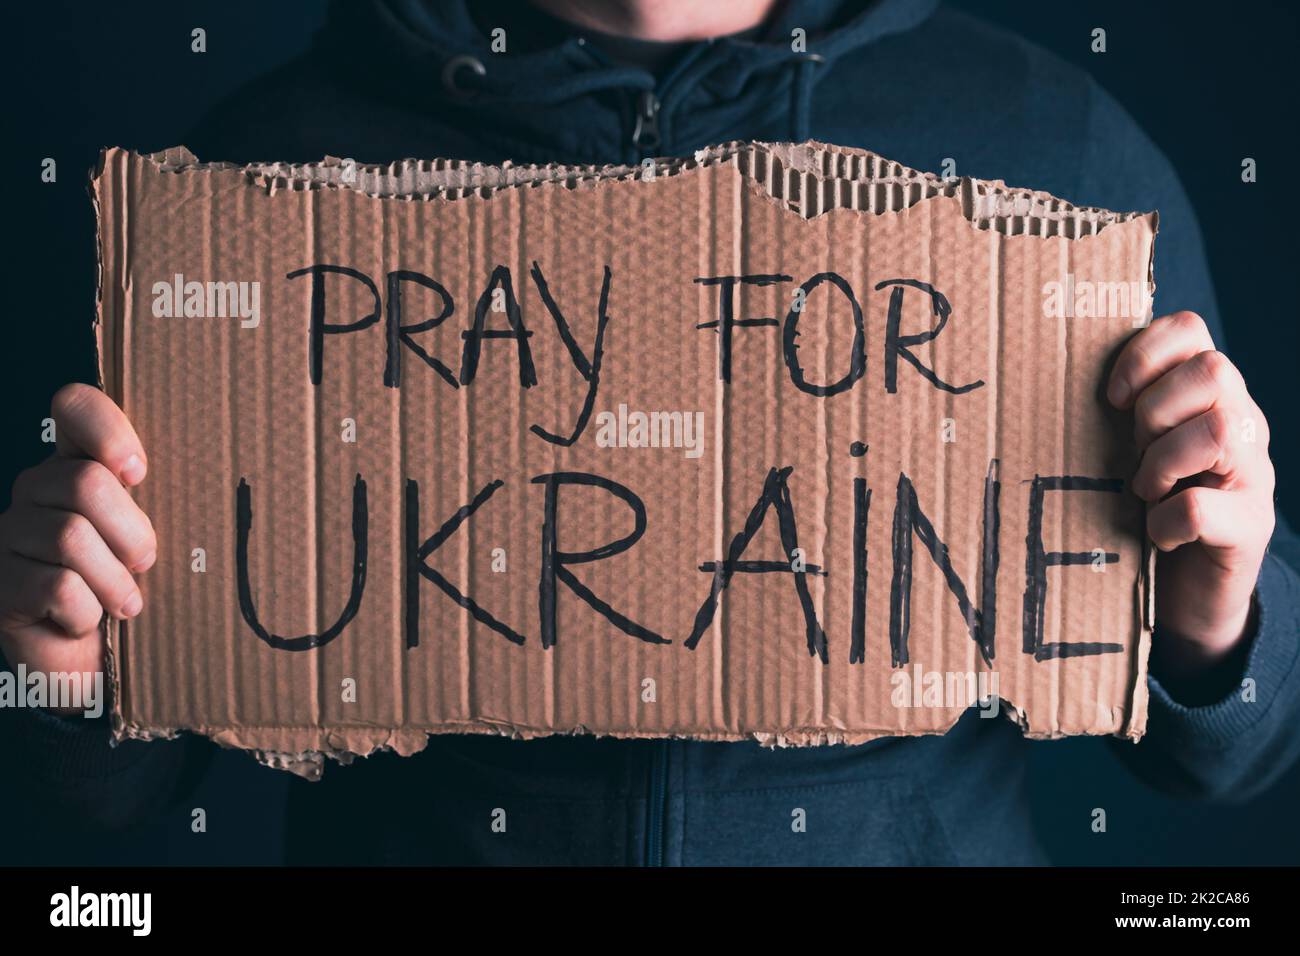 Gros plan sur la main de femme avec la bannière prier pour l'Ukraine Banque D'Images